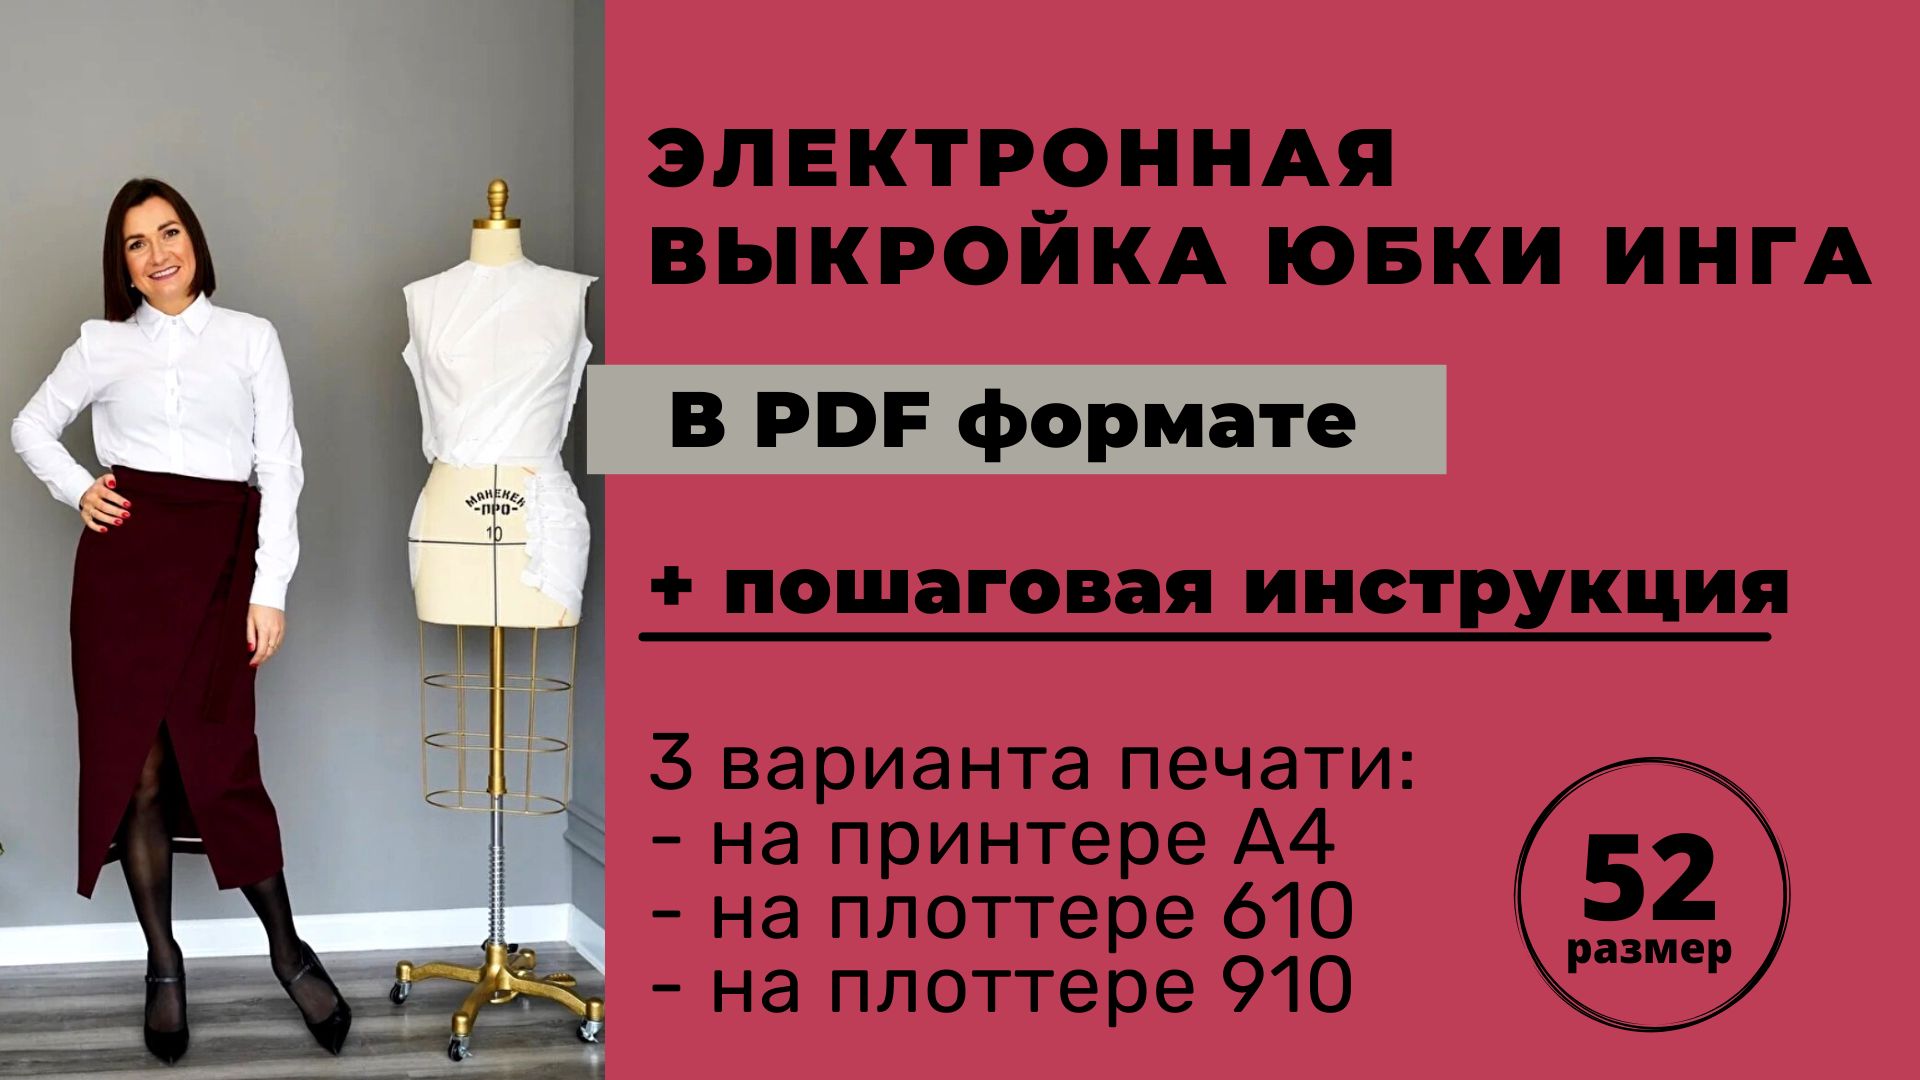 Электронная выкройка юбки Инга размер 52 в формате pdf для печати А4 / плоттер 610 / плоттер 910